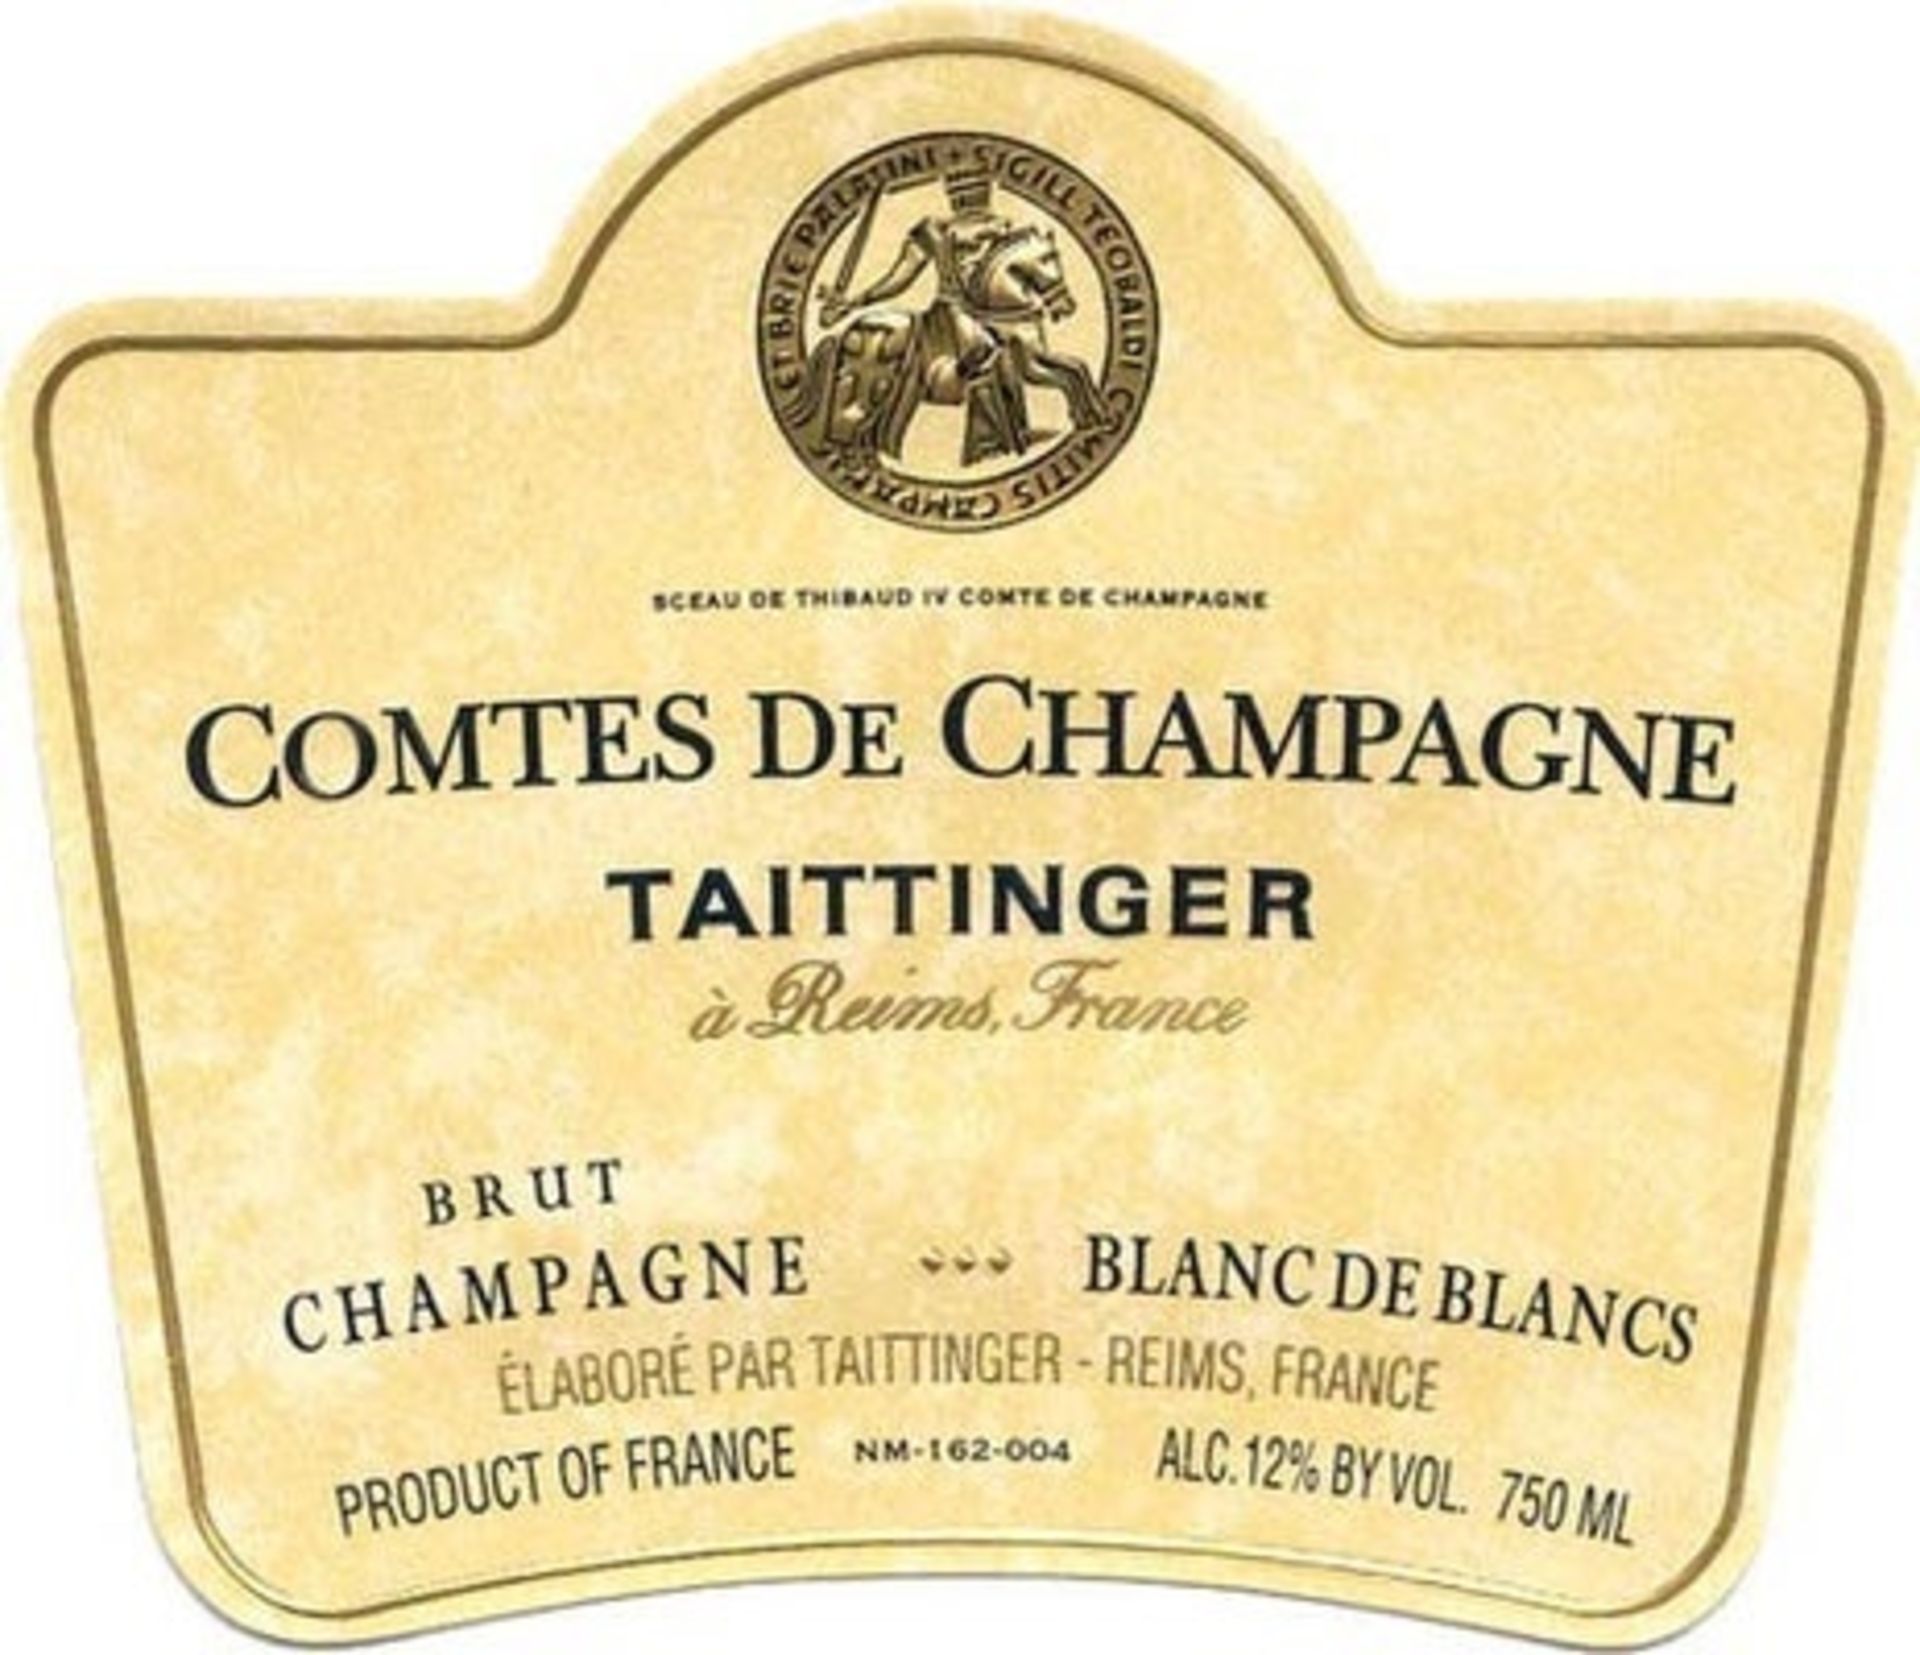 Taittinger Comtes De Champagne Blanc De Blancs 2005 750ml ( Bid Is For 1x Bottle Option To